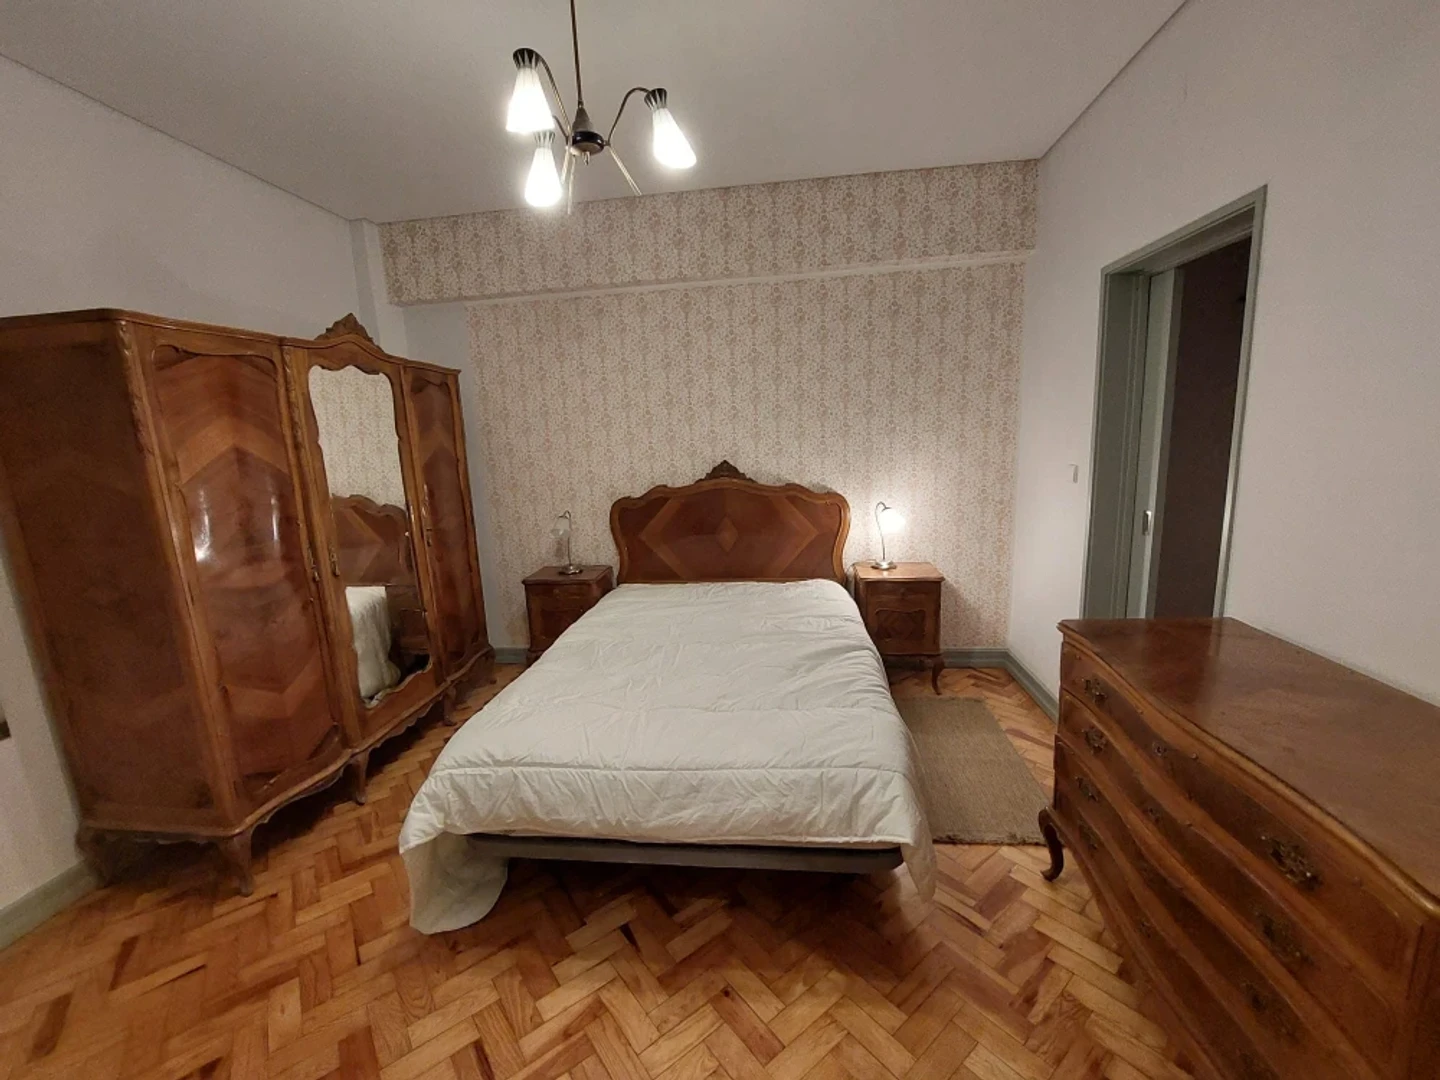 Lisboa içinde 2 yatak odalı konaklama